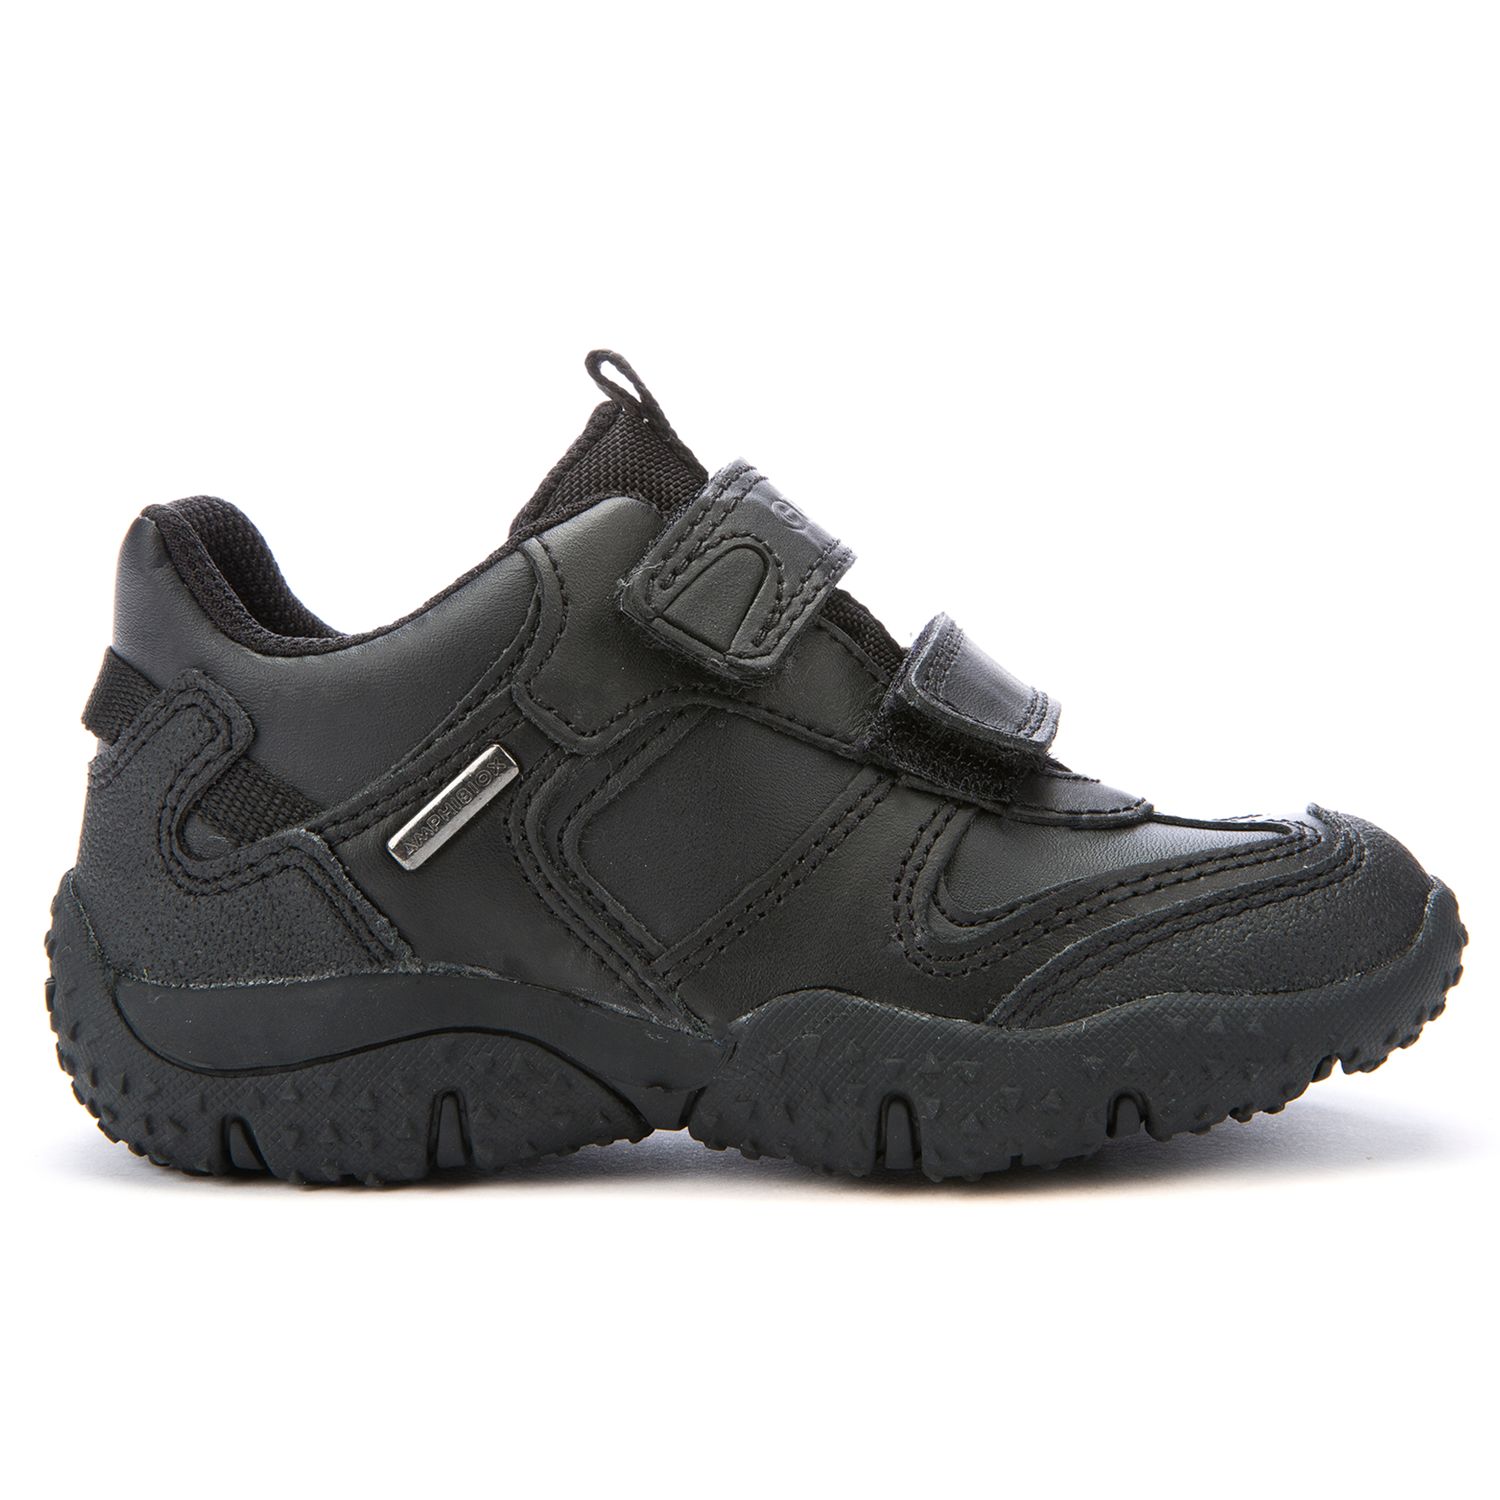 Geox Baltic Waterproof Shoes, Black at John Lewis & Partners